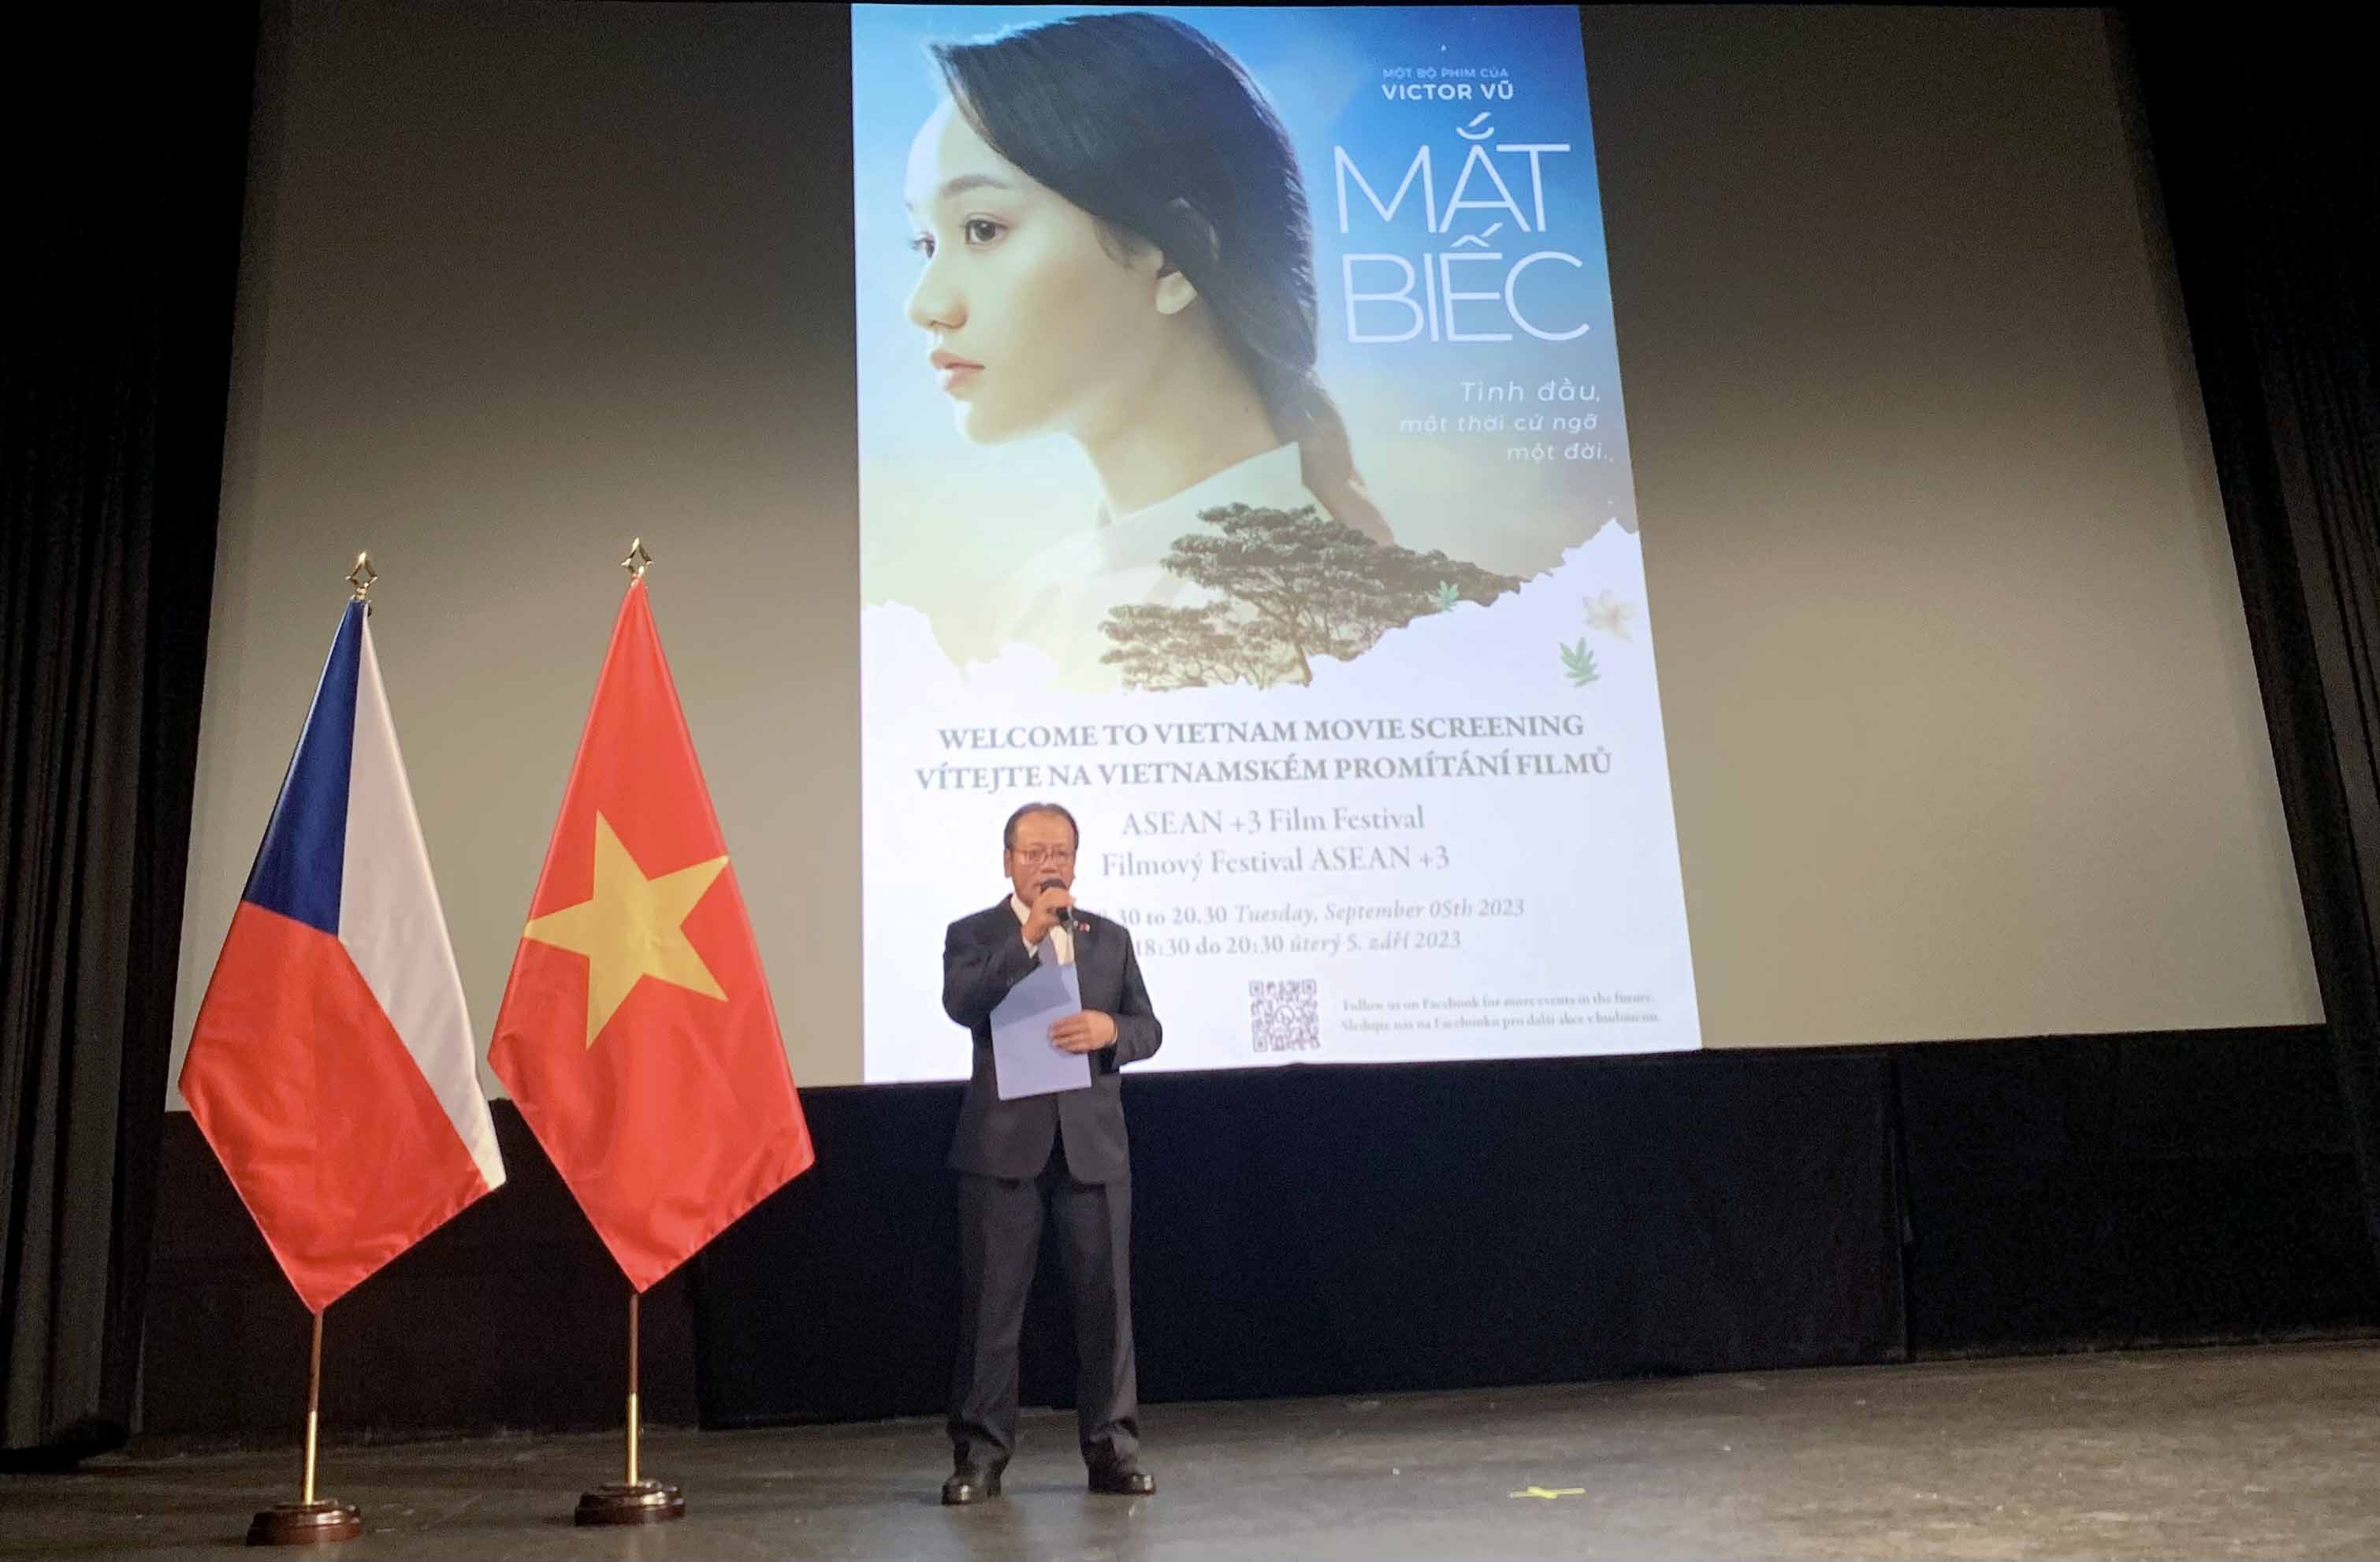 Đại sứ Thái Xuân Dũng phát biểu khai mạc tại sự kiện mở màn và ngày chiếu phim Việt Nam.